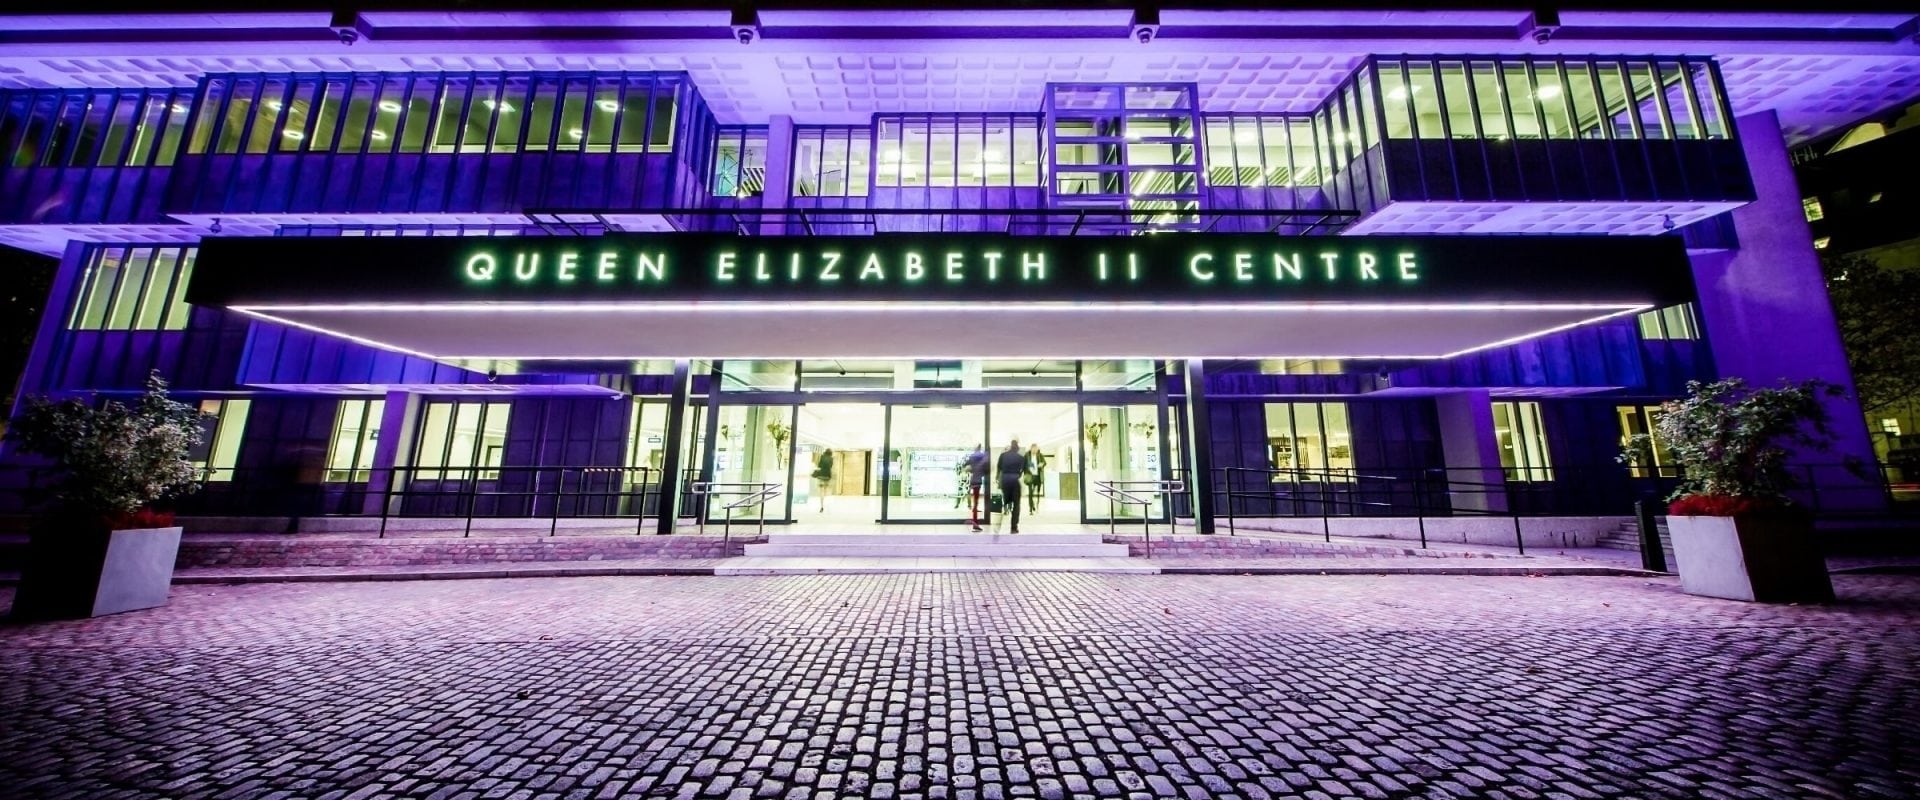 Queen Elizabeth II Centre de Londres